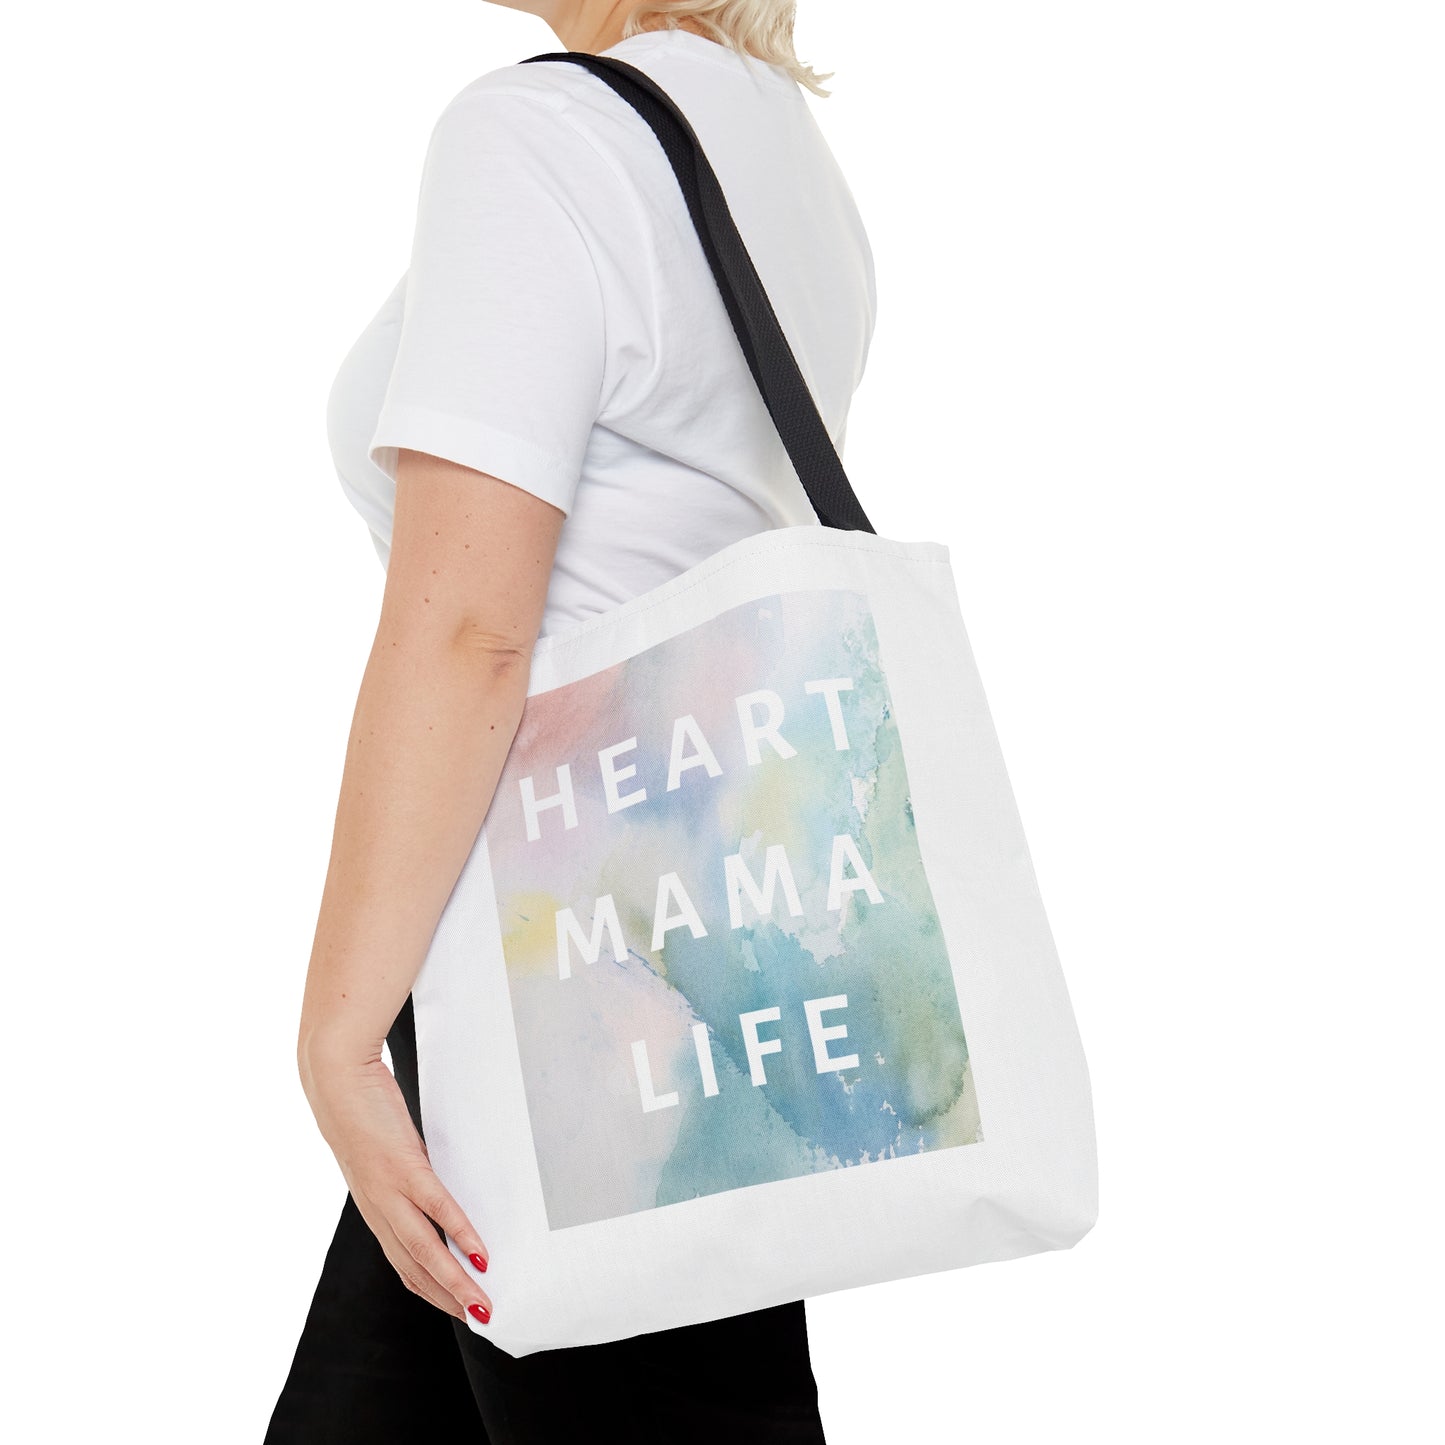 
                  
                    Heart Mama Life Premium Tote Bag
                  
                